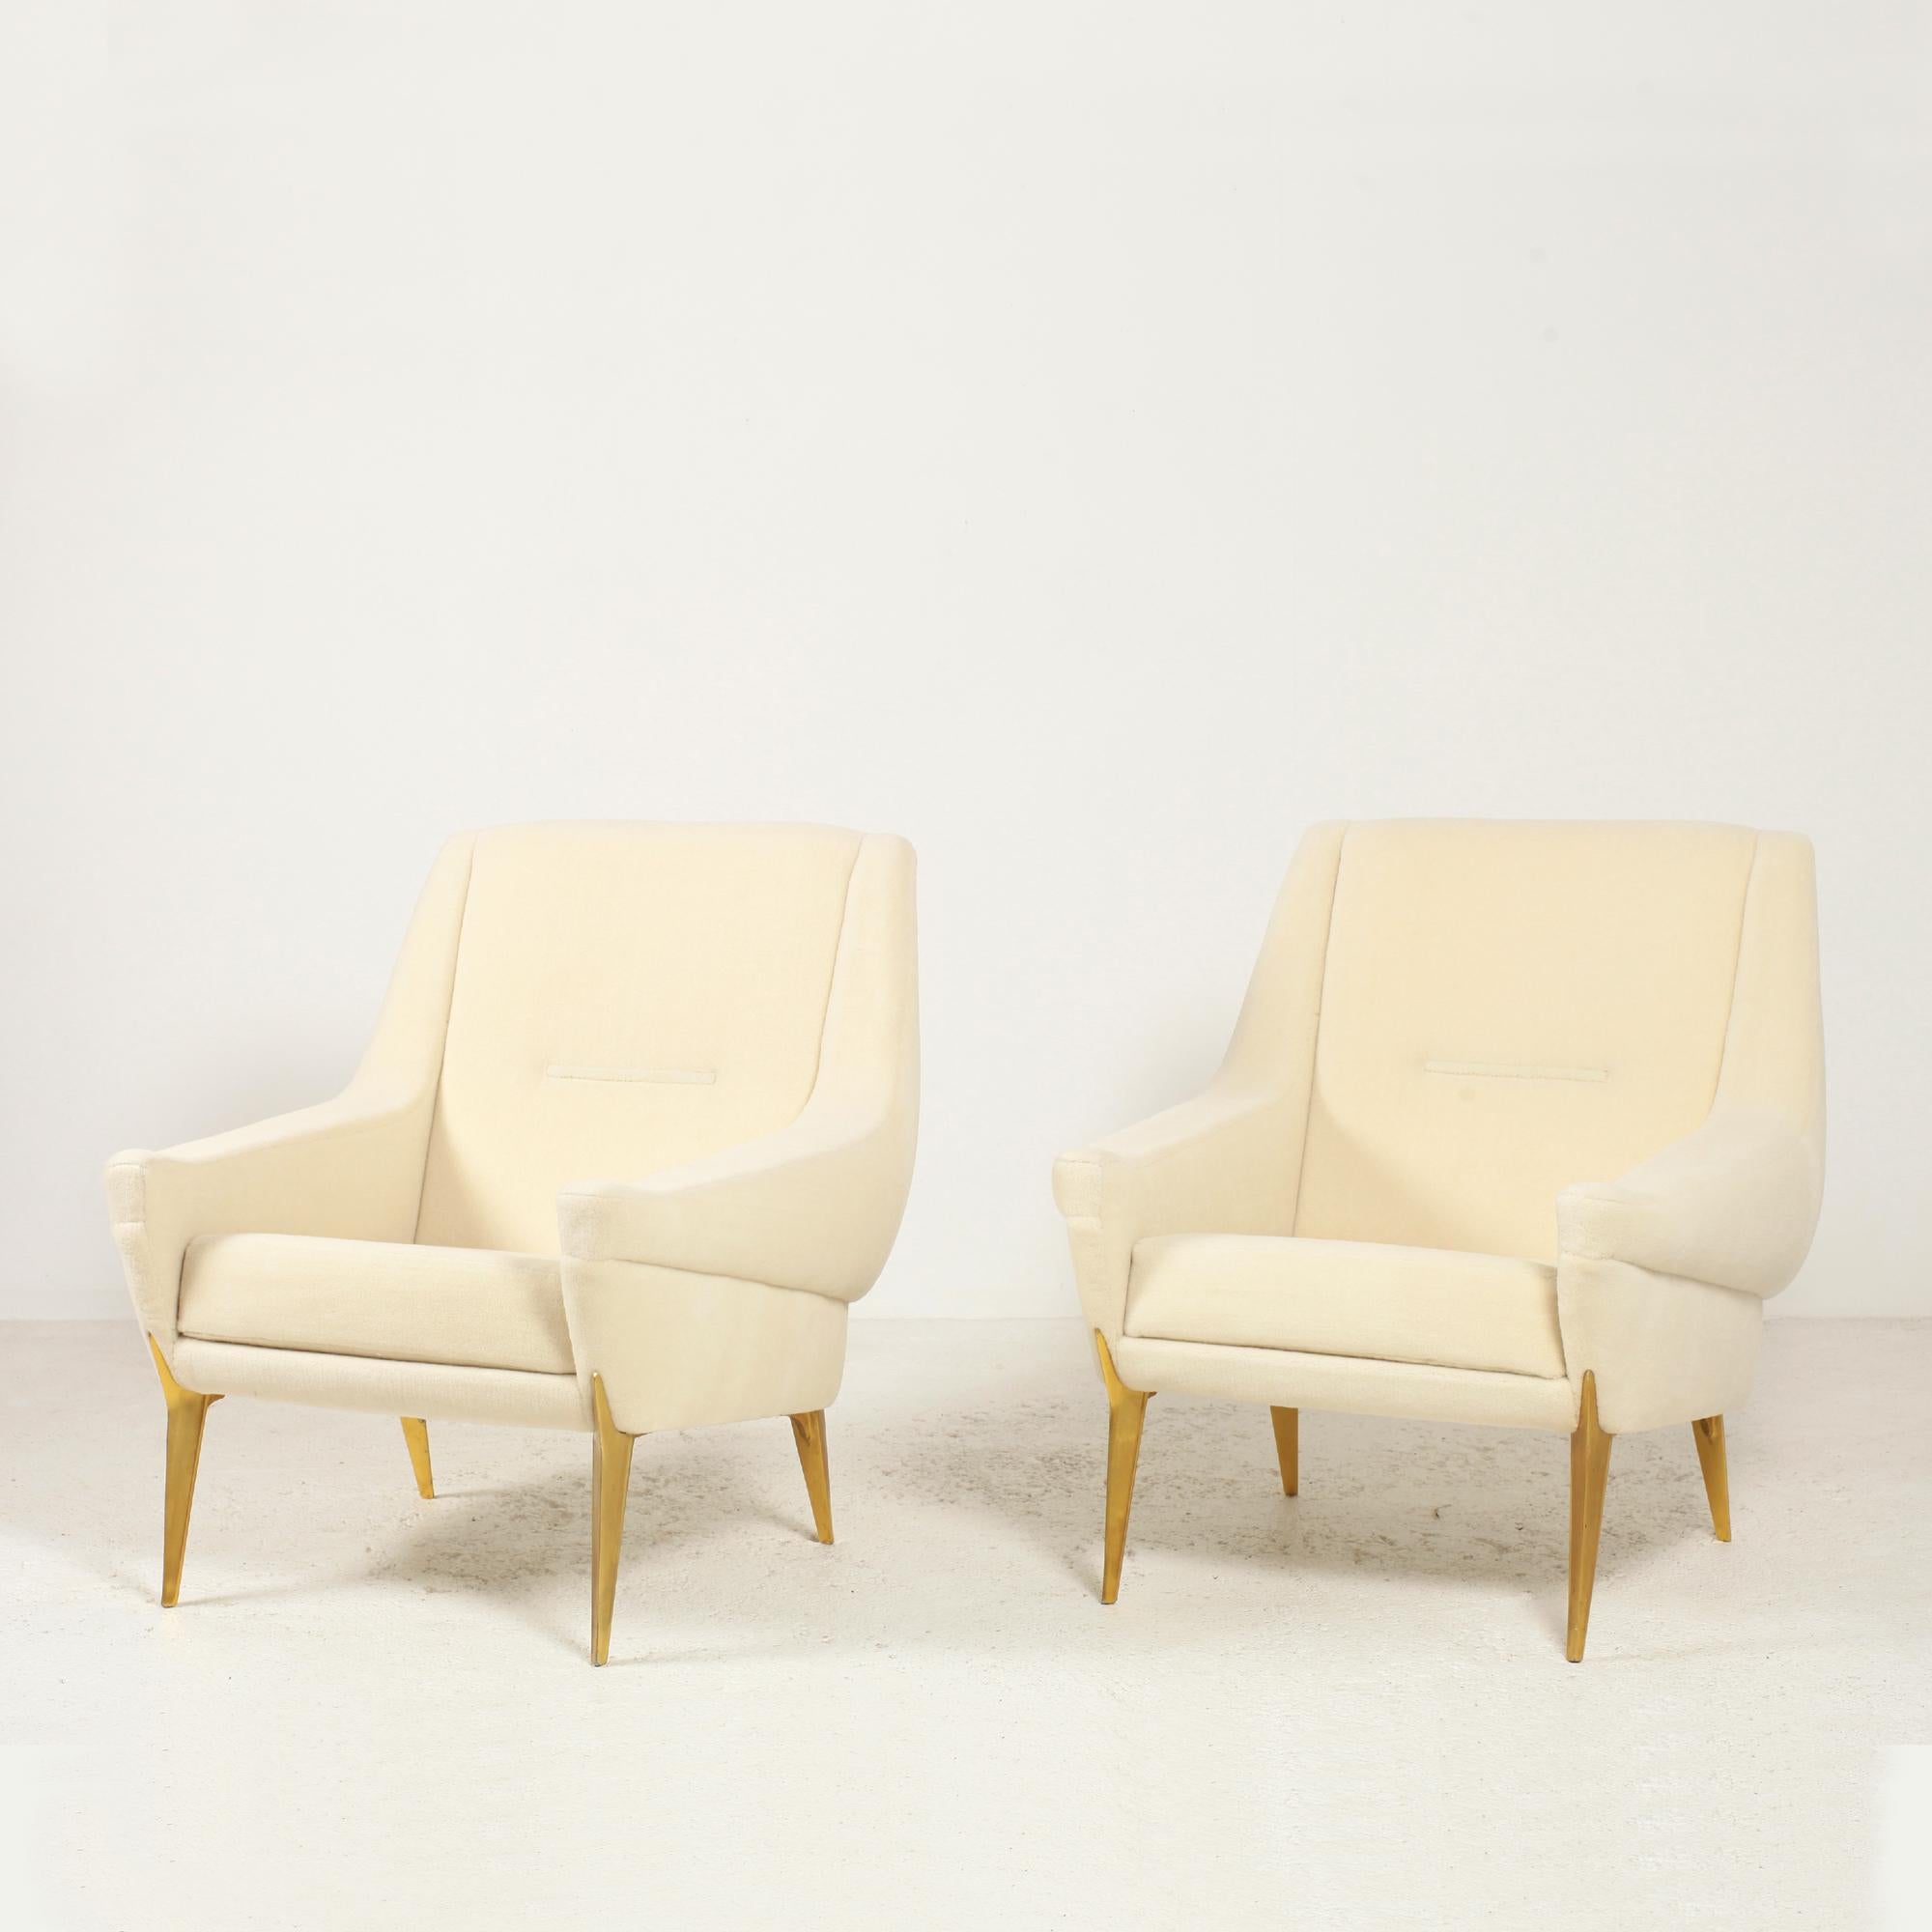 Très élégante et rare paire de fauteuils de salon par Charles Ramos pour Castellaneta France circa 1950.
Les pieds sont en aluminium anodisé doré d'origine.
Structure en bois massif. Entièrement refait (mousse et tissu).
Remeublé avec du velours de